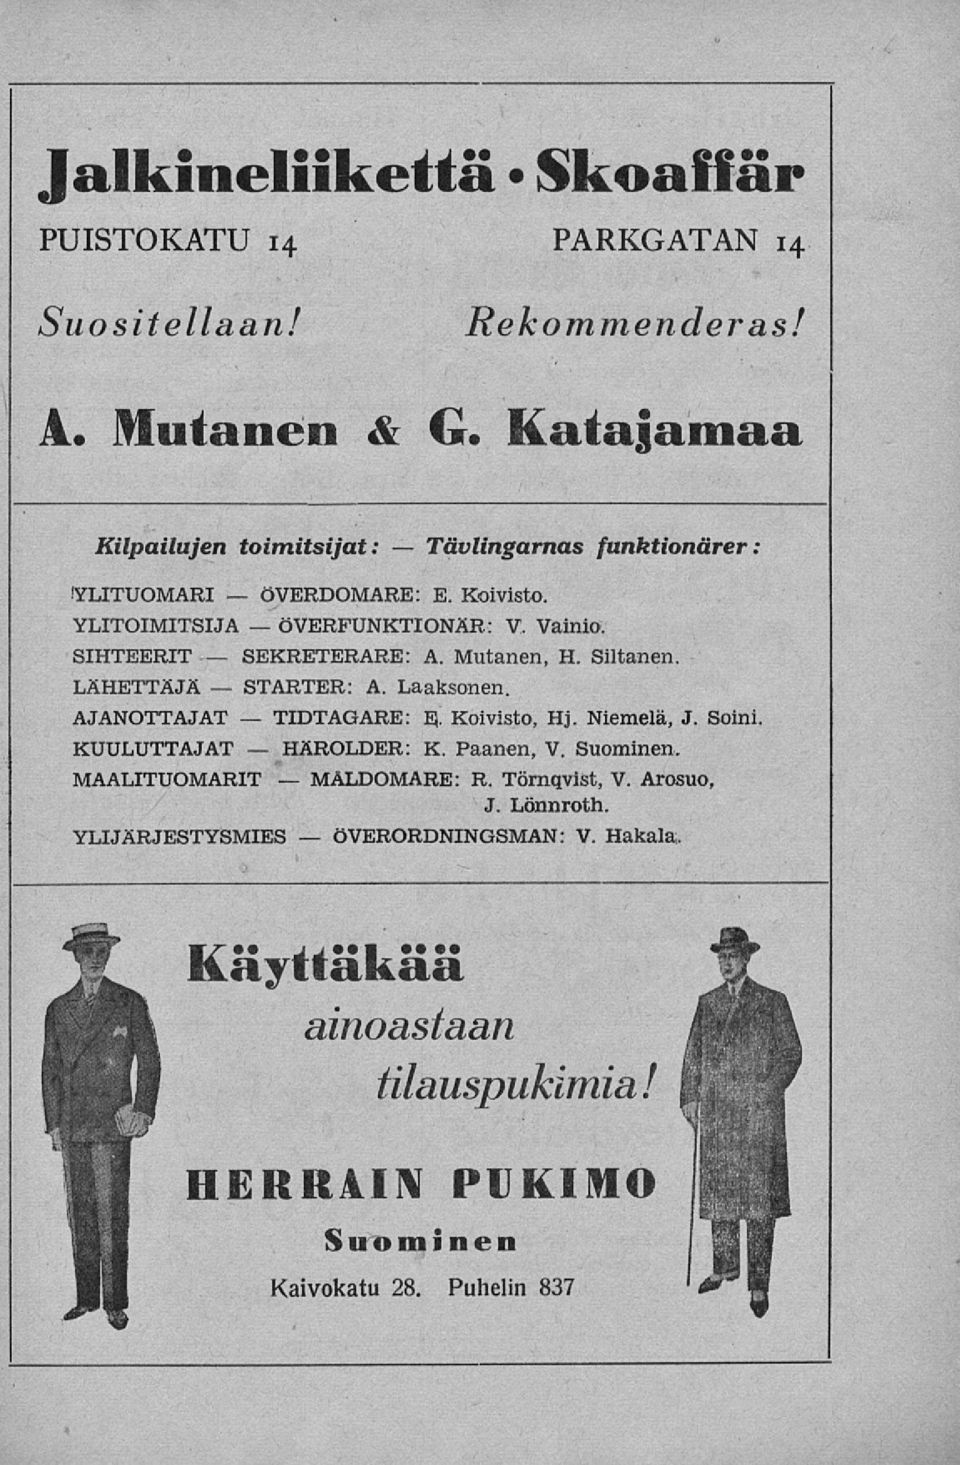 SIHTEERIT A. Mutanen, H. Siltanen LÄHETTÄJÄ A. Laaksonen. AJANOTTAJAT E- Koivisto, Hj. Niemelä, J. Soini. KUULUTTAJAT K. Paanen, V.